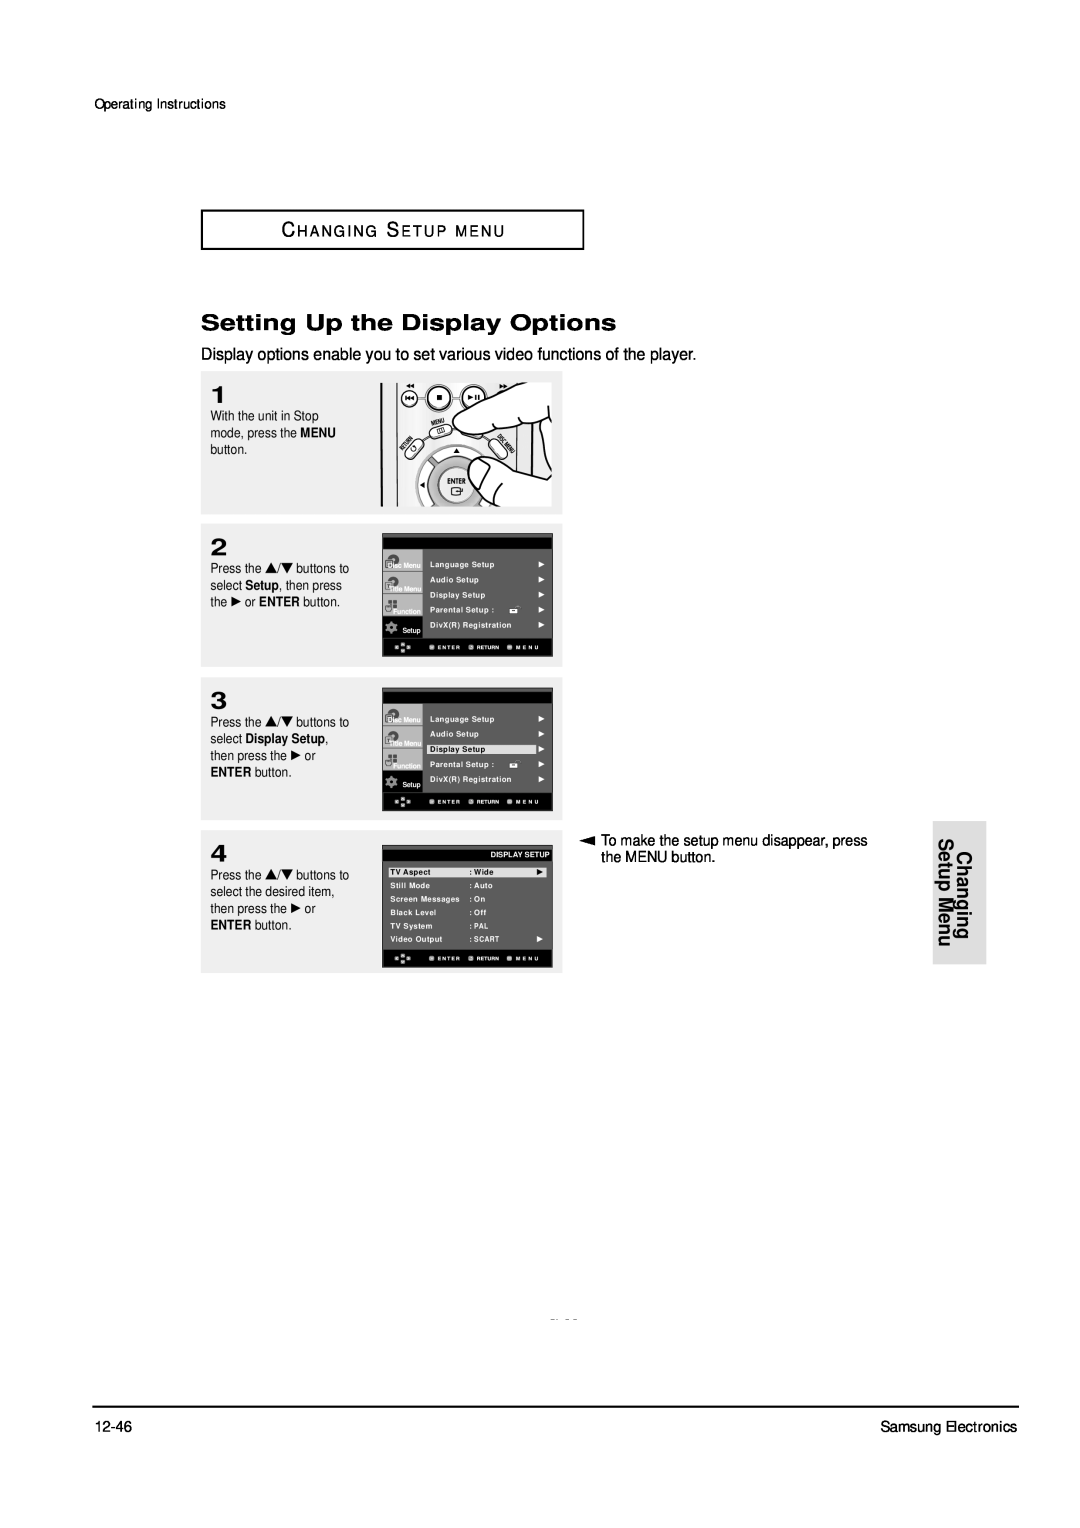 Samsung DVD-P355B/XEG, DVD-P355B/XEU Setting Up the Display Options, Changing Setup Menu, Operating Instructions, ENG-53 